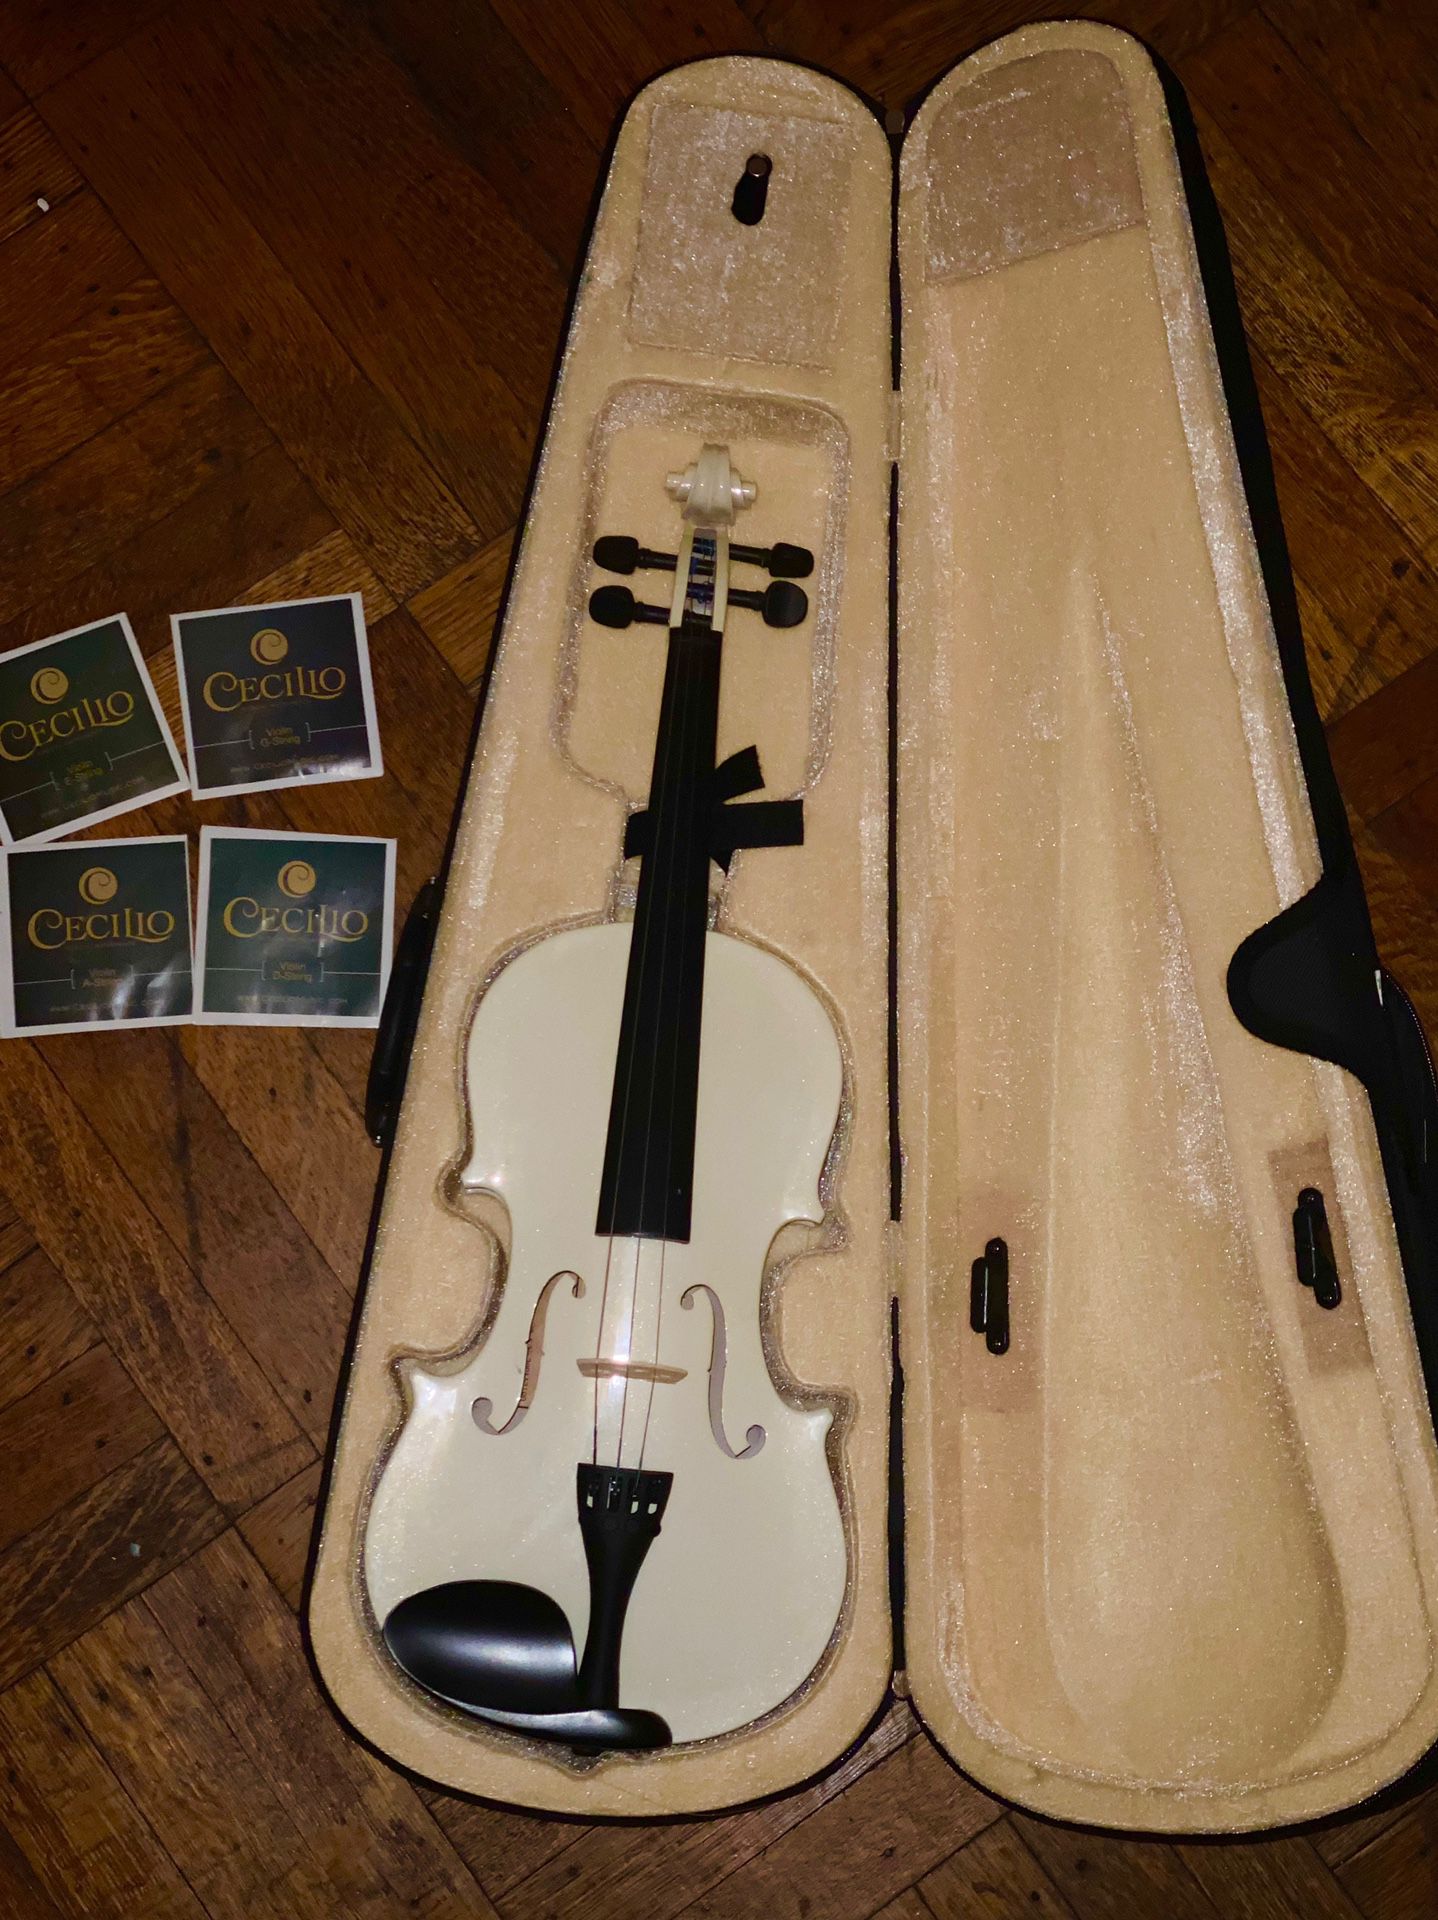 Cecilio white violin